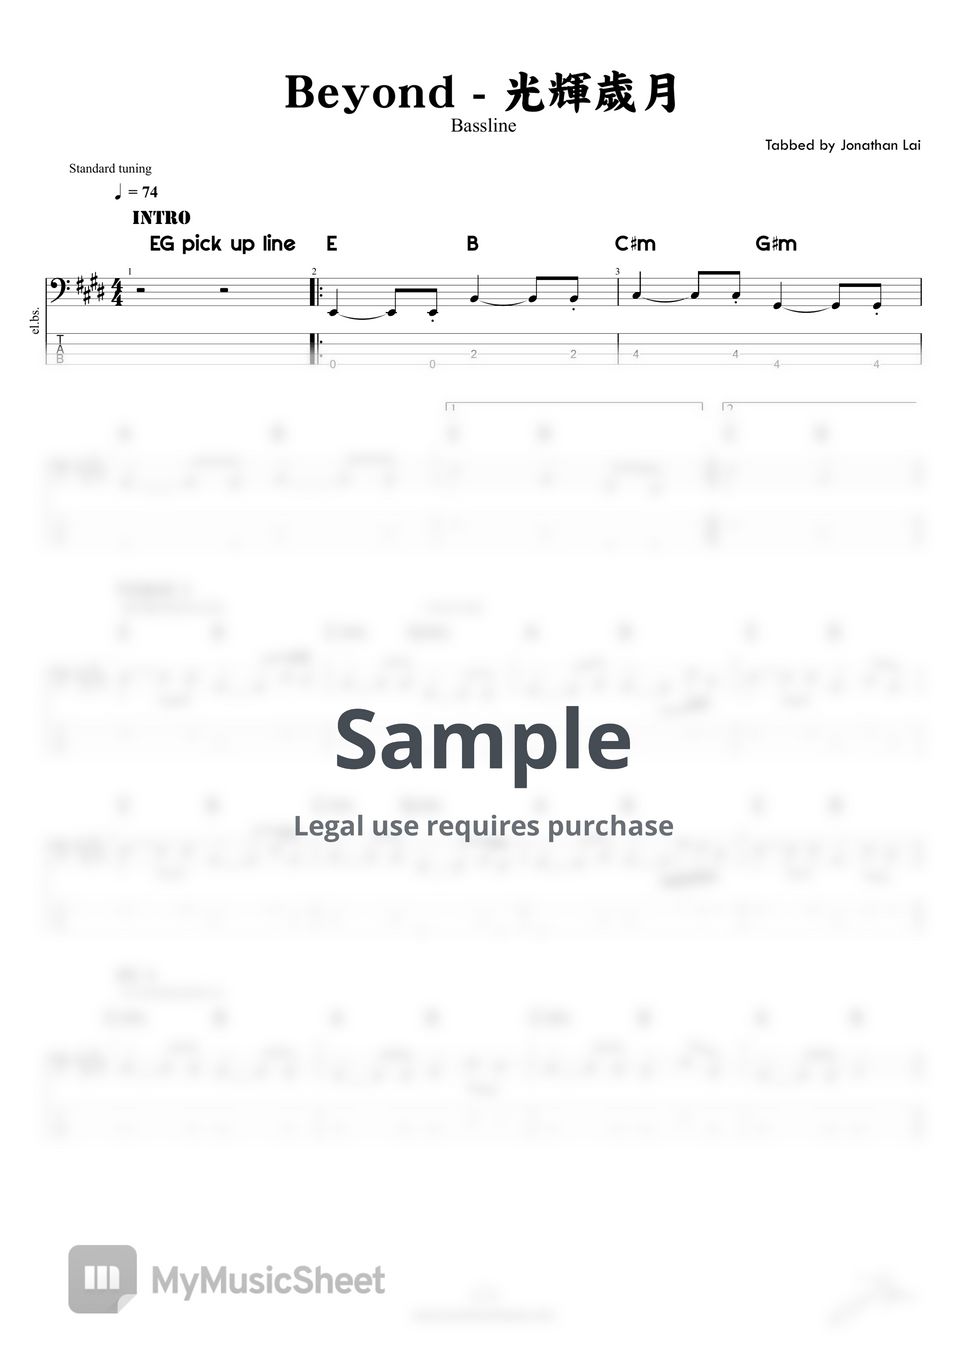 Beyond - 光輝歲月 (Bass Guitar Score) by Jonathan Lai